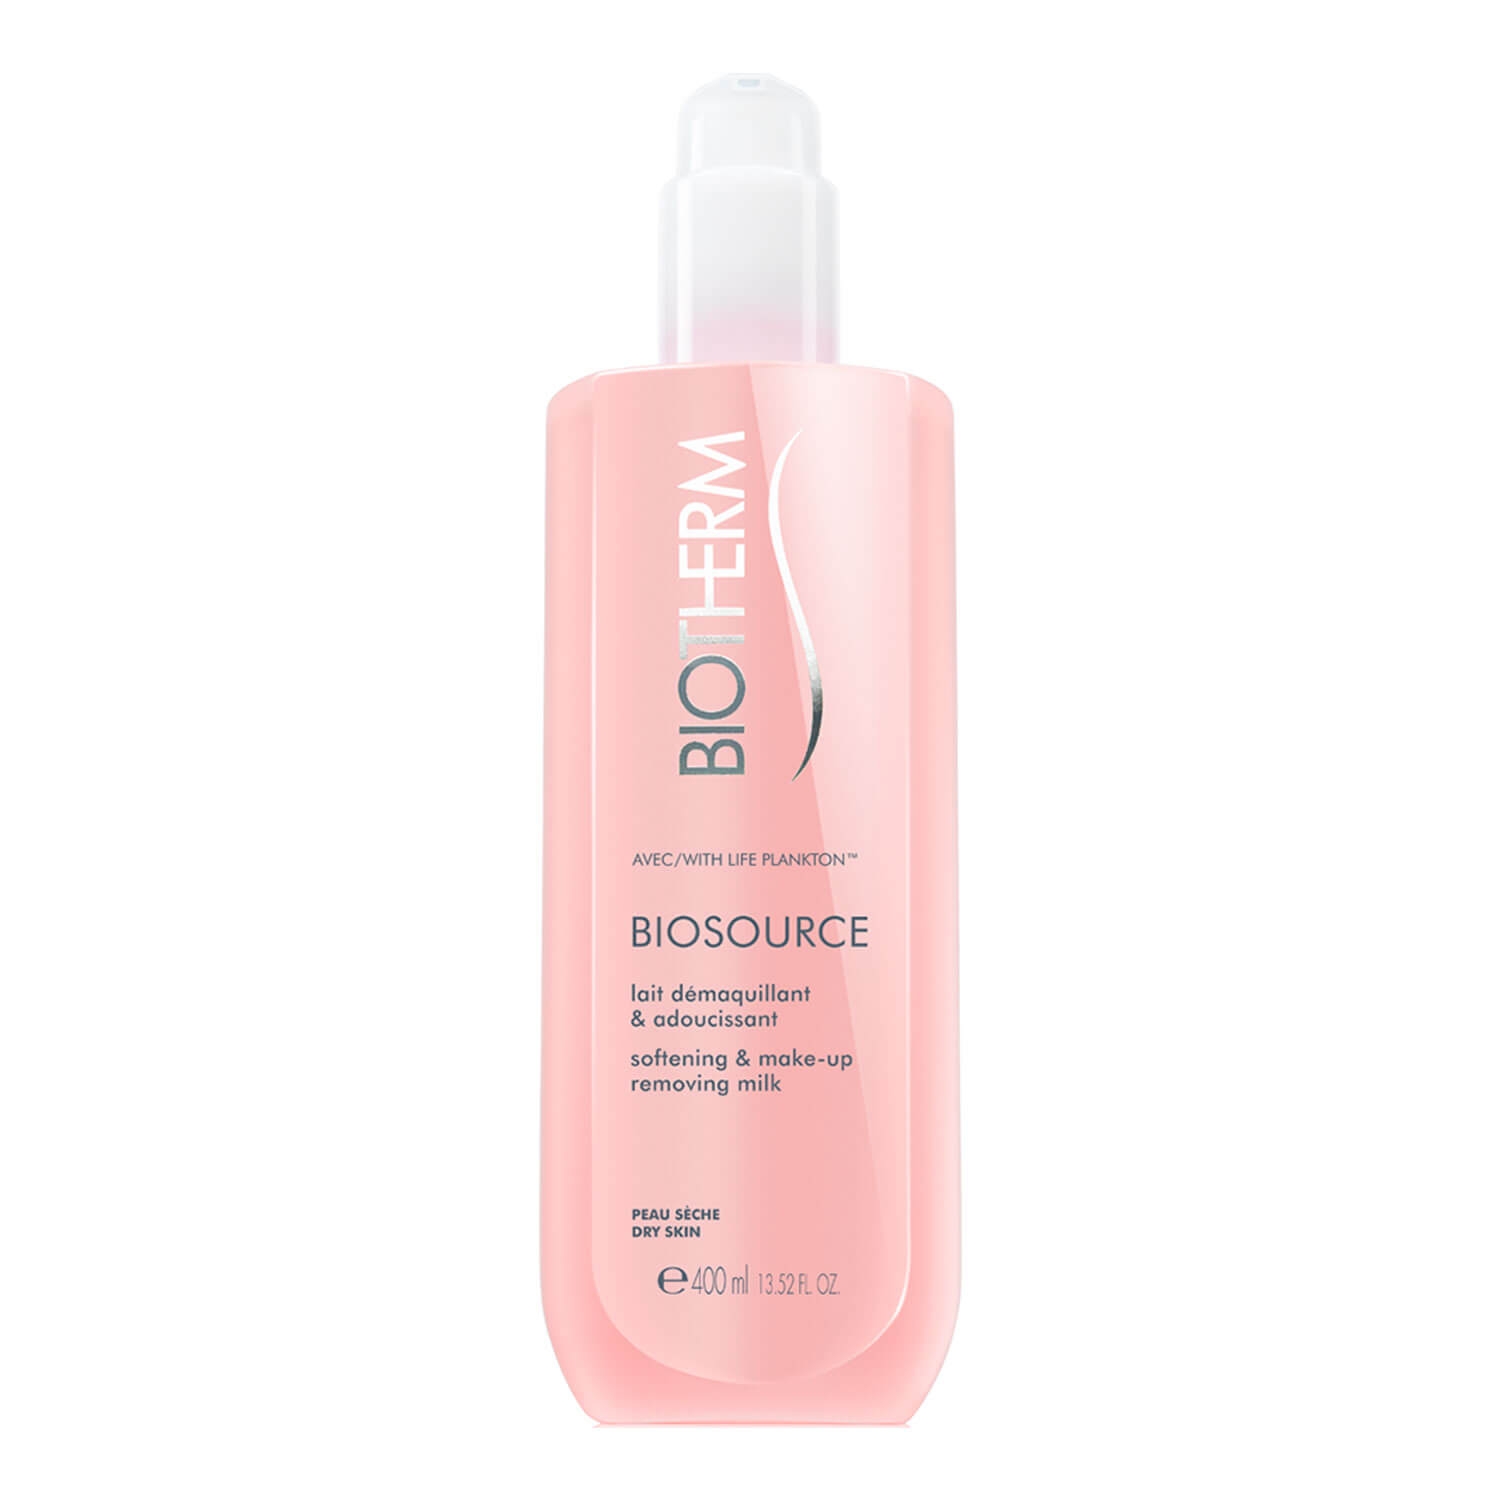 Produktbild von Biosource - Make-Up Removing Milk Dry Skin Limited Edition